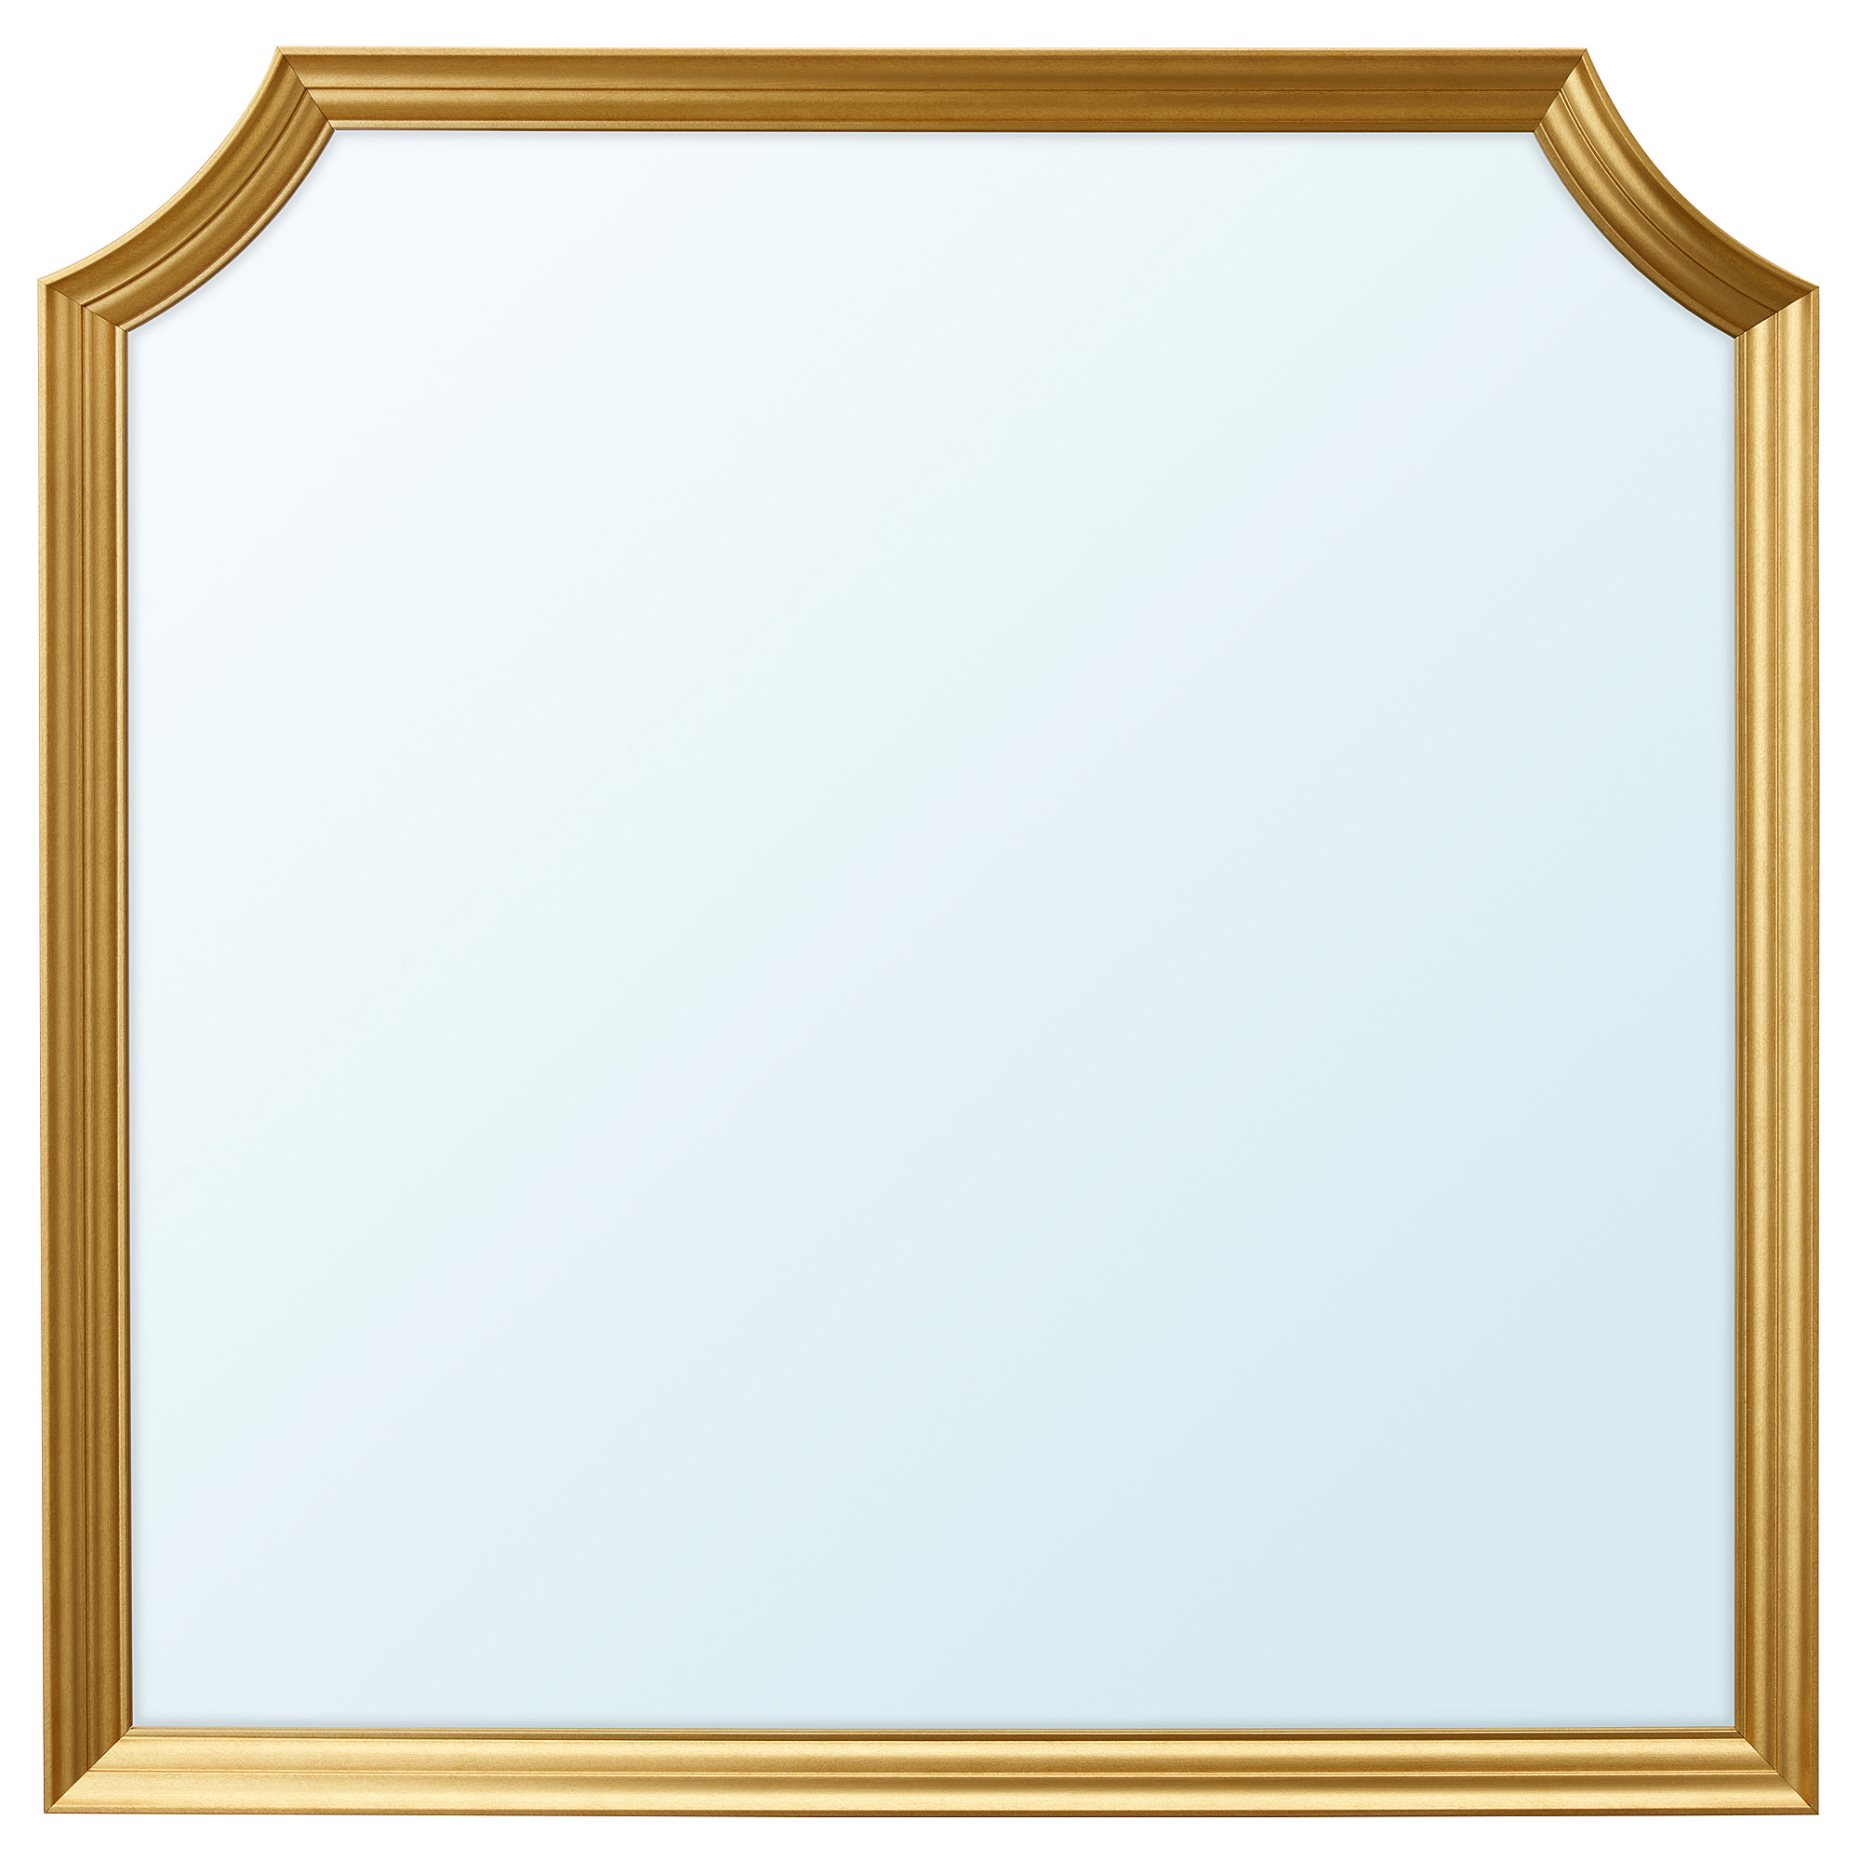 SVANSELE, καθρέφτης, 78x78 cm, 304.337.47